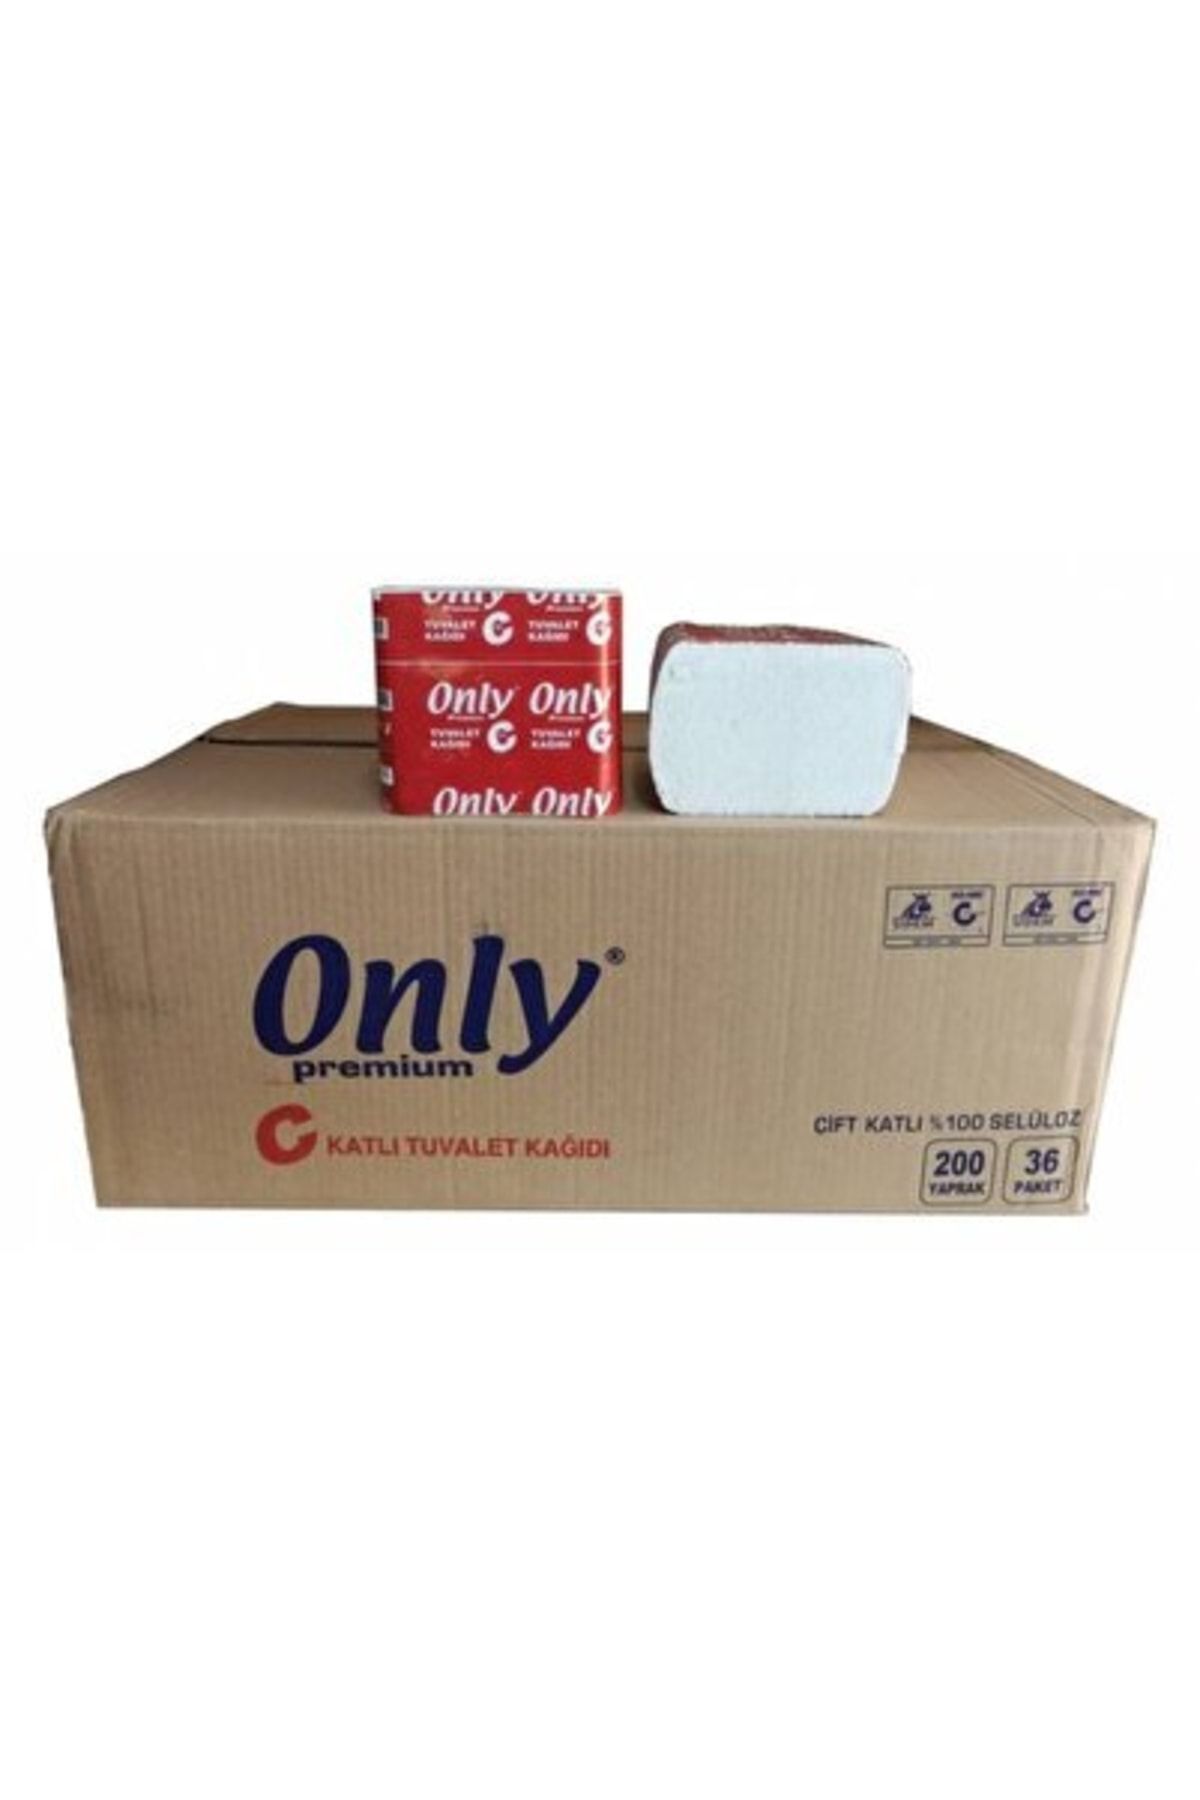 Only Kağıt Only Evo Beyond C Katlama Tuvalet Kağıdı 200 Yaprak 36 Paket